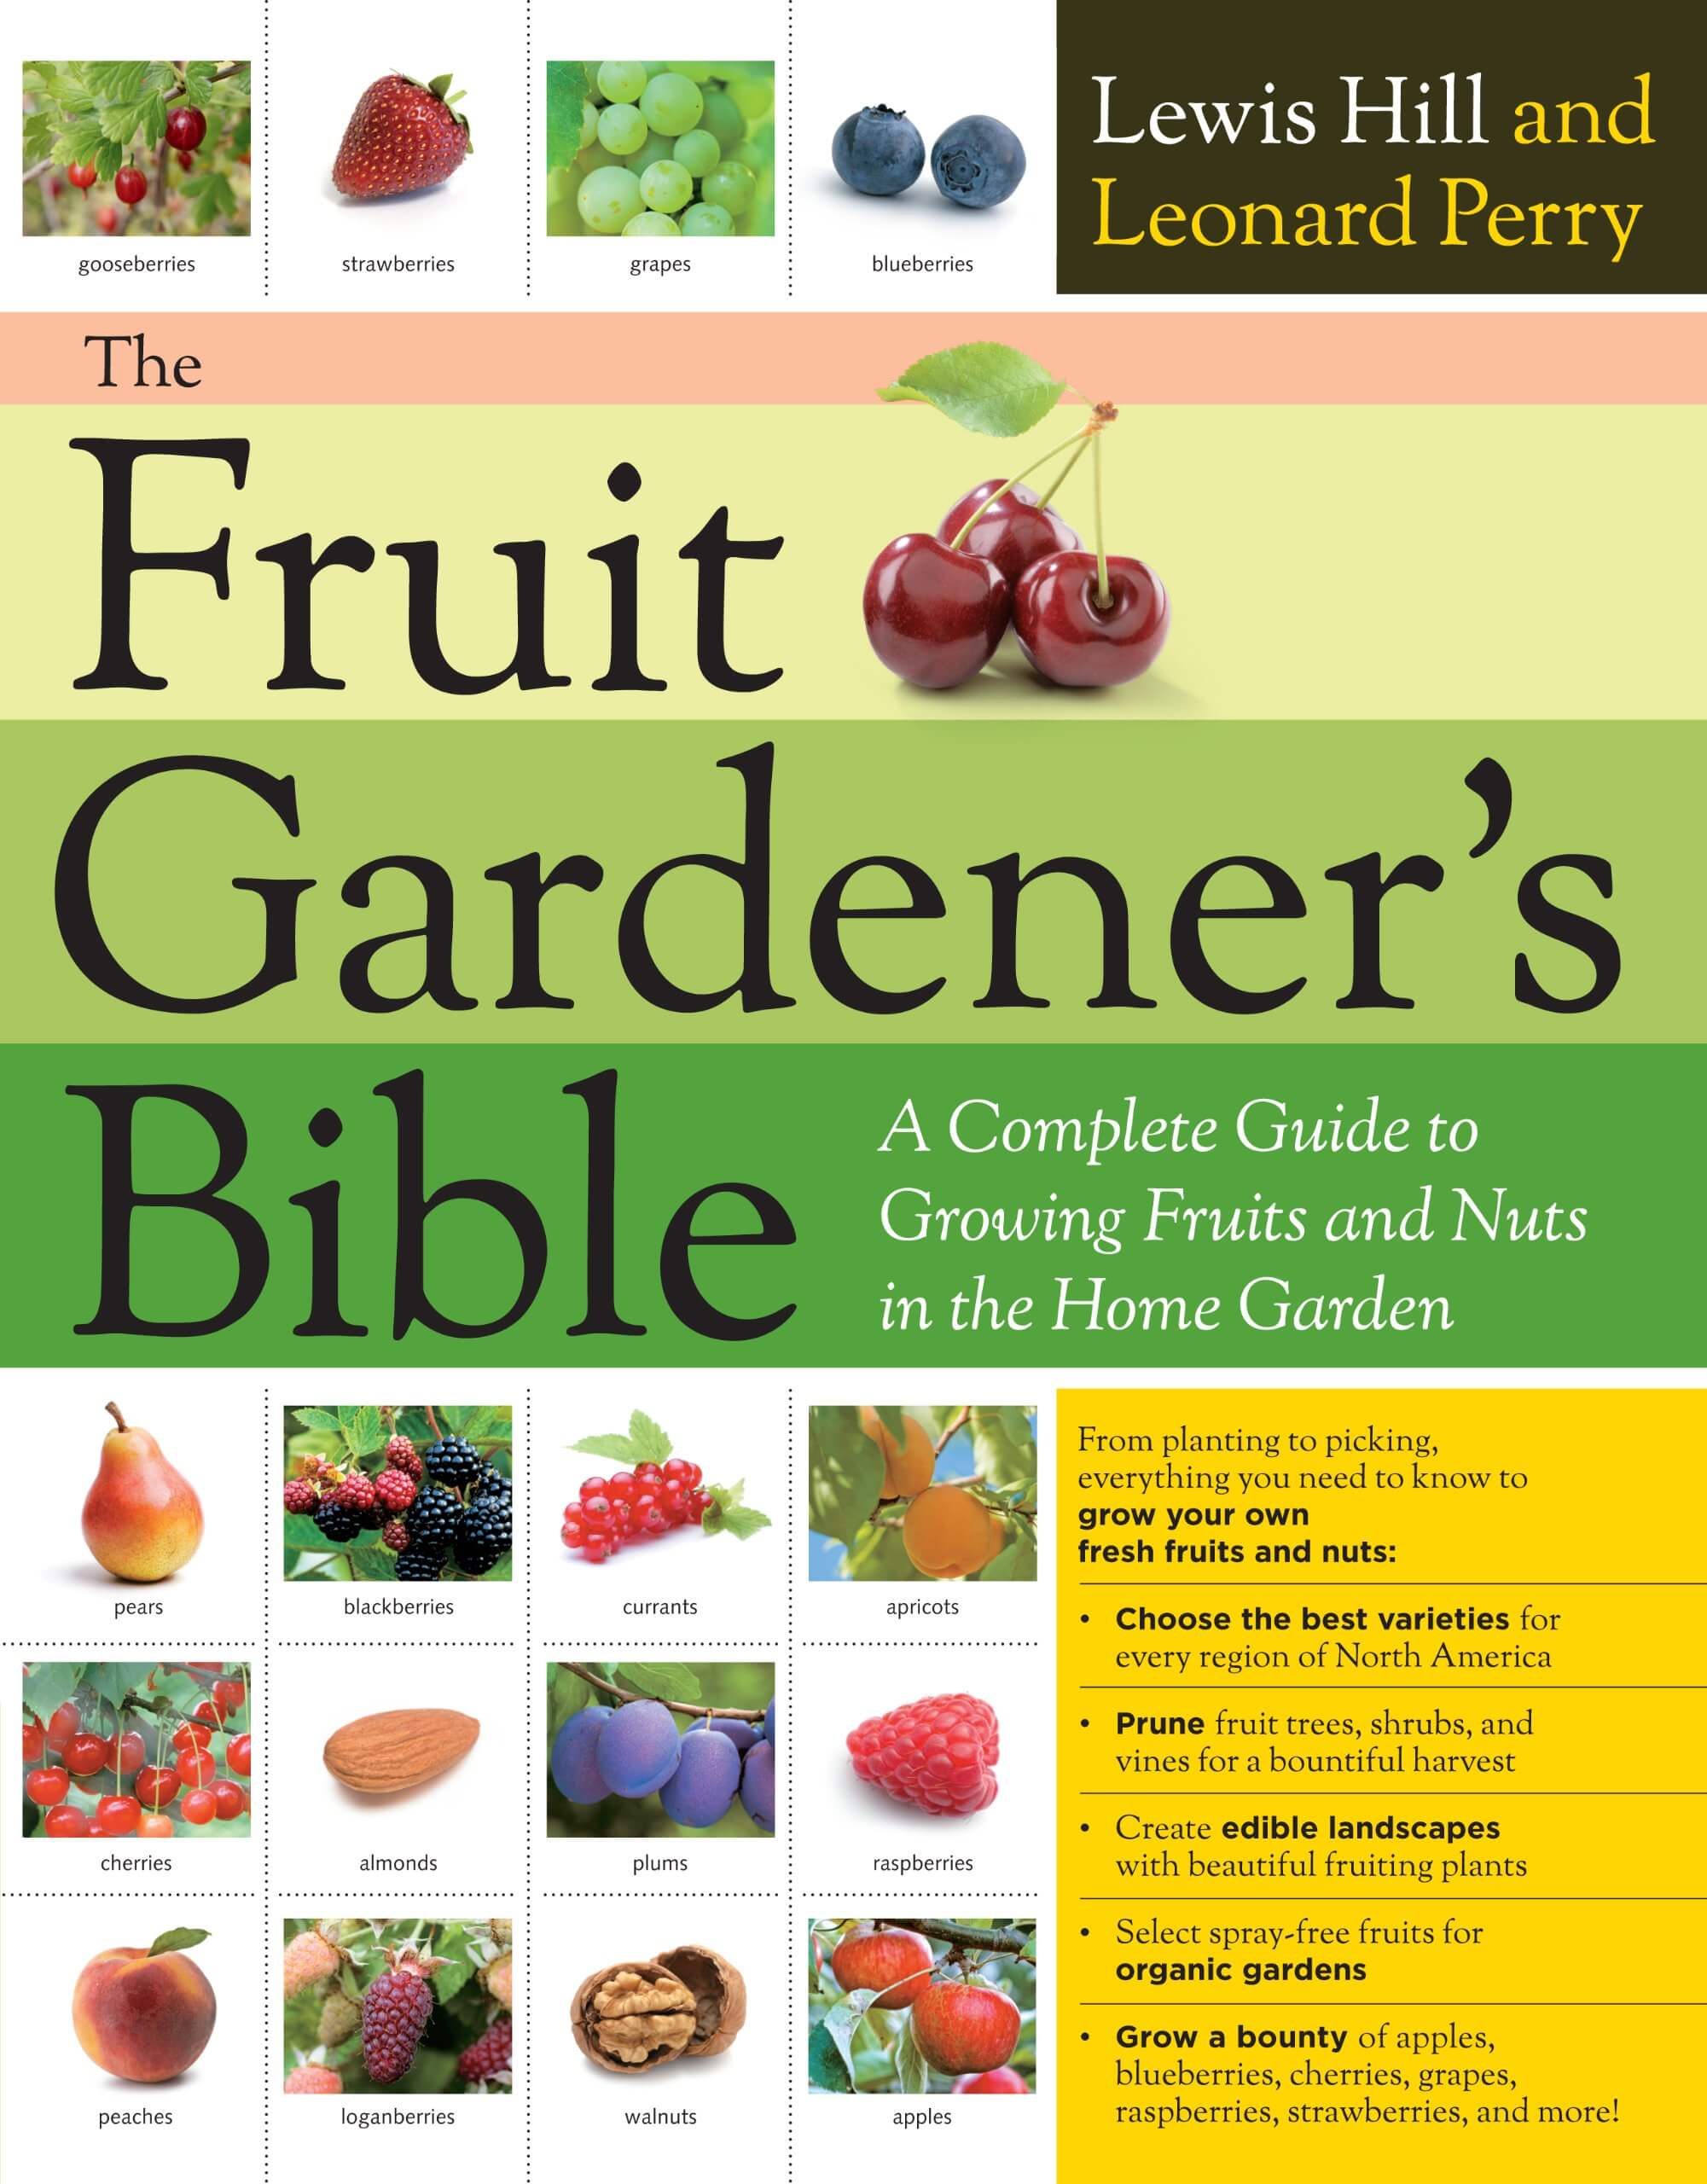 Fruit Gardener's Bible